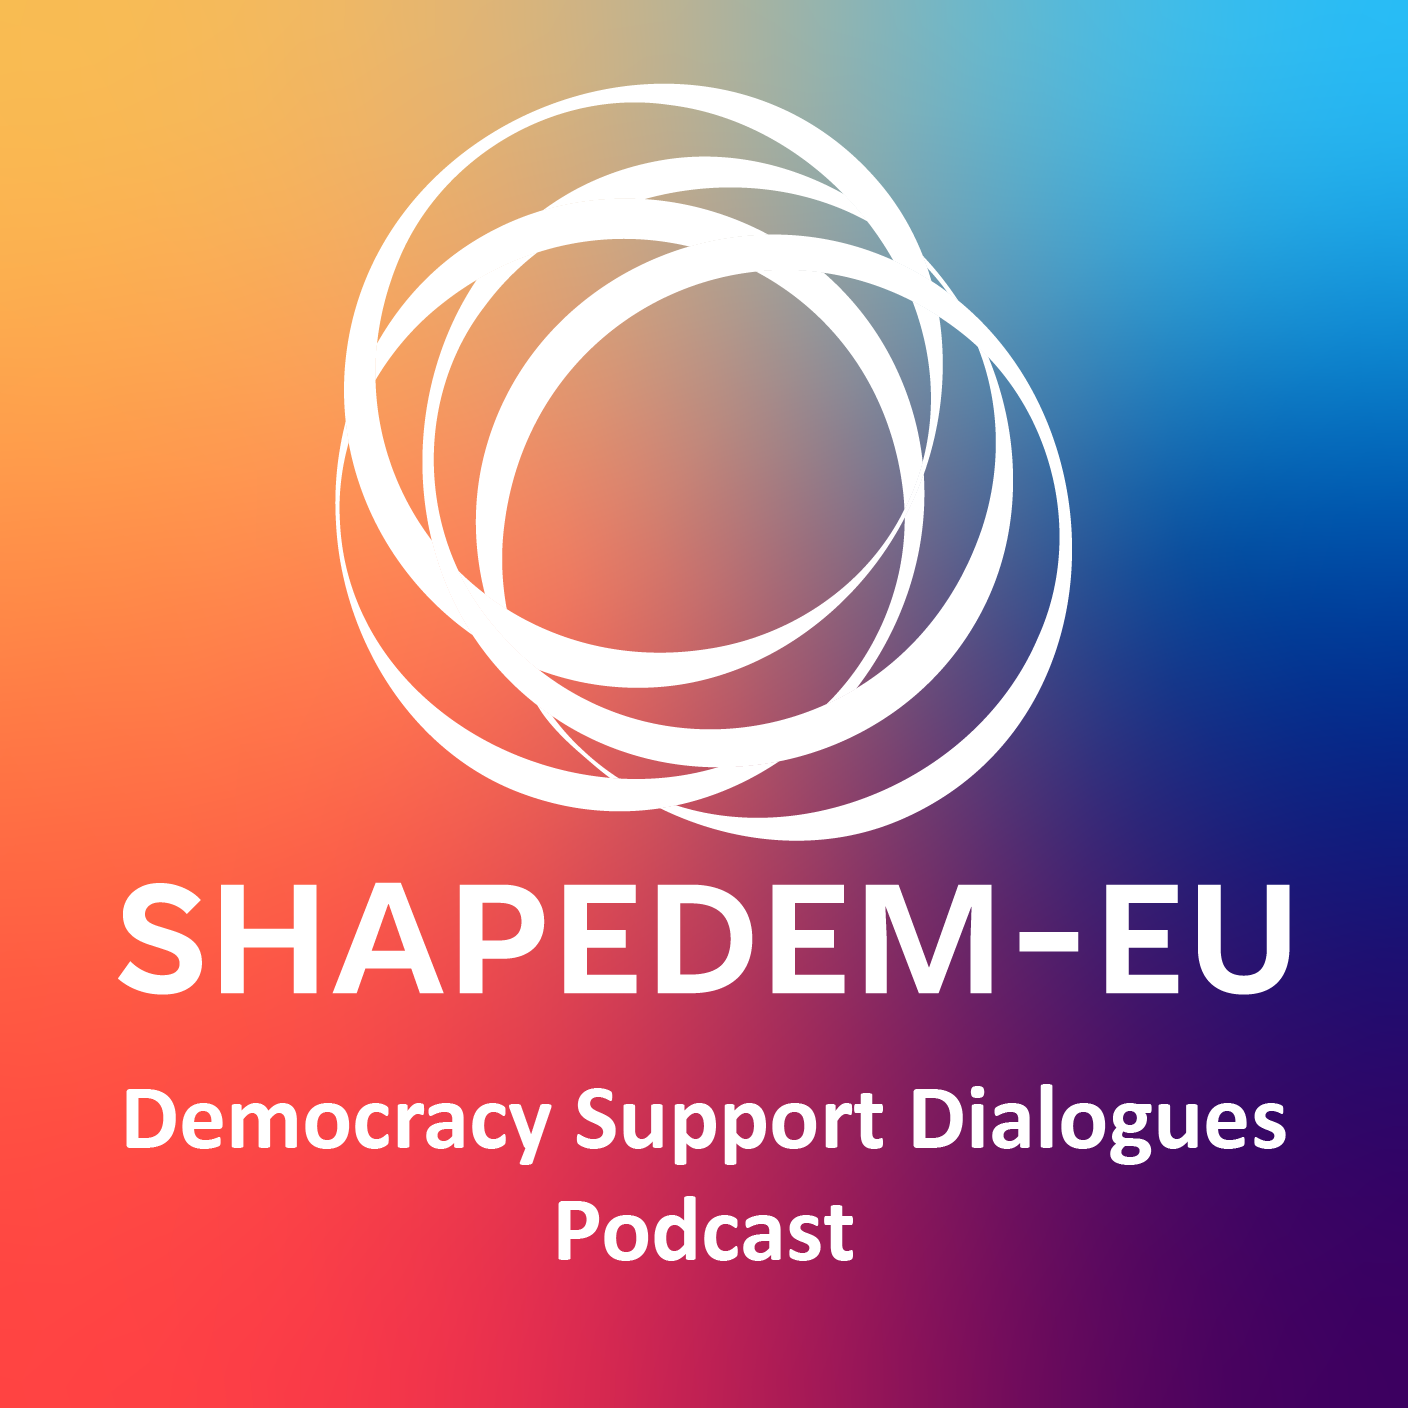 SHAPEDEM-EU_logo_podcast